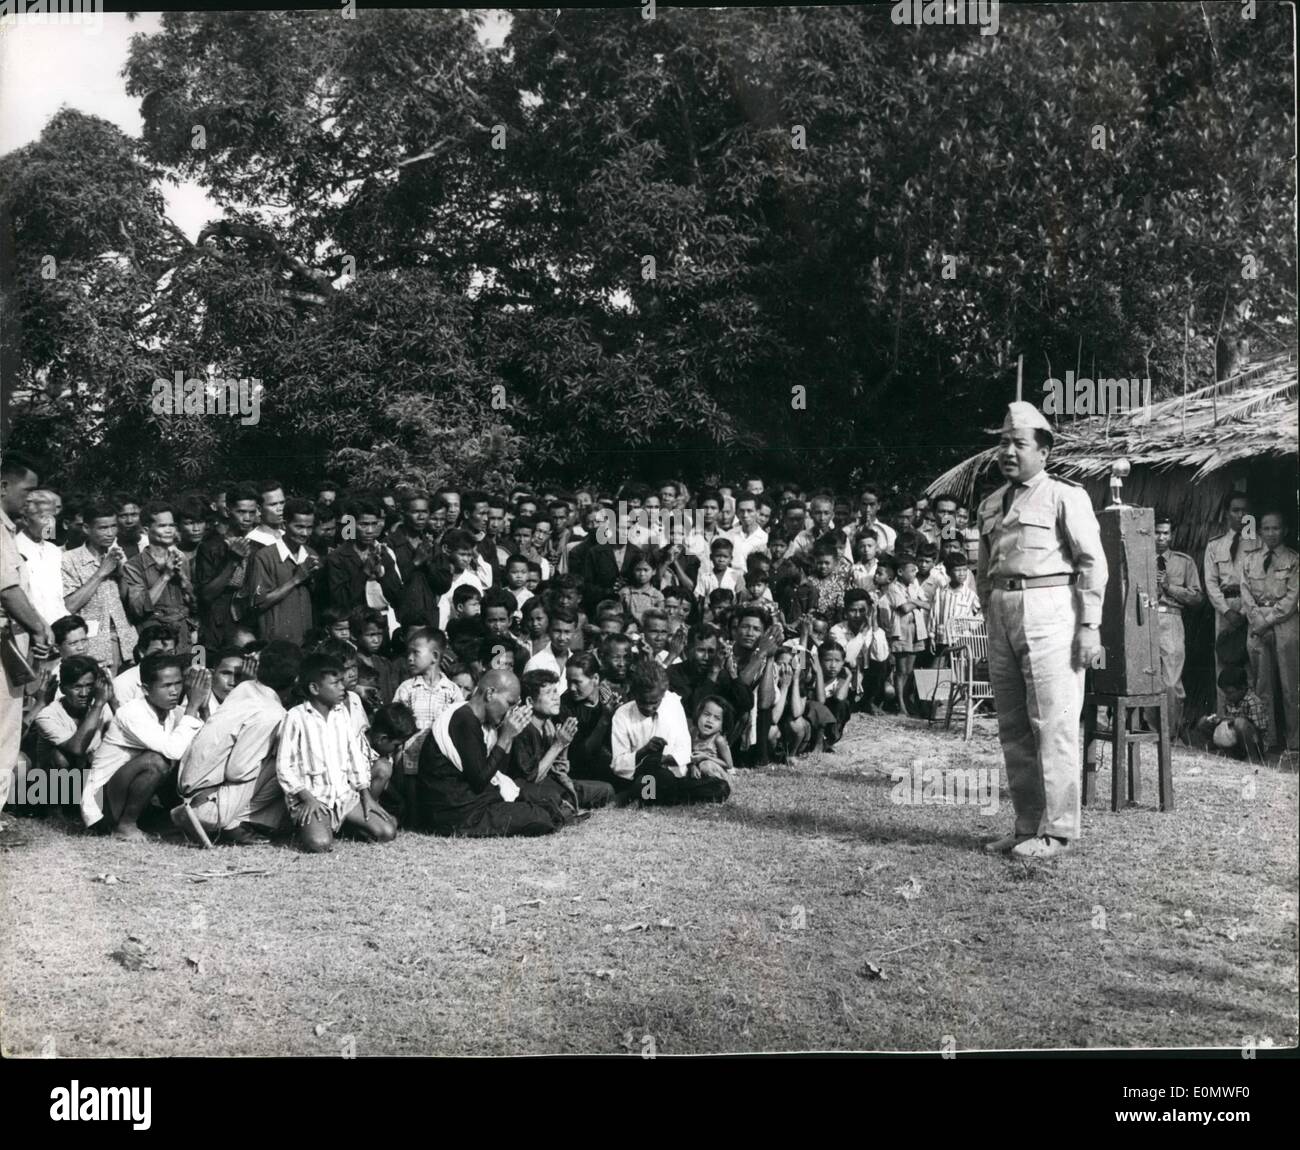 7. Juli 1956 - Kambodscha erkennt Pekinger Regierung: bei He Weiler Chraneang Te etwa 10 Km von der Grenze von Südvietnam, Prinz Norodom Sihanouk Premierminister von Kambodscha vor kurzem bekannt, dass seine Regierung beschlossen hatte, de Jure (legal) - die Peking-Regierung anerkennt. Der Prinz war ein Publikum - vor allem von Bauern - bei seinem Besuch in dem Weiler zu Inaugrate seine '' water Policy'' - soll der Bau von Staudämmen - zu fördern Adressierung Brunnen - Stauseen etc. der Land - Wasser für die Bewässerung usw., die während der trockenen Jahreszeit sicherzustellen Stockfoto